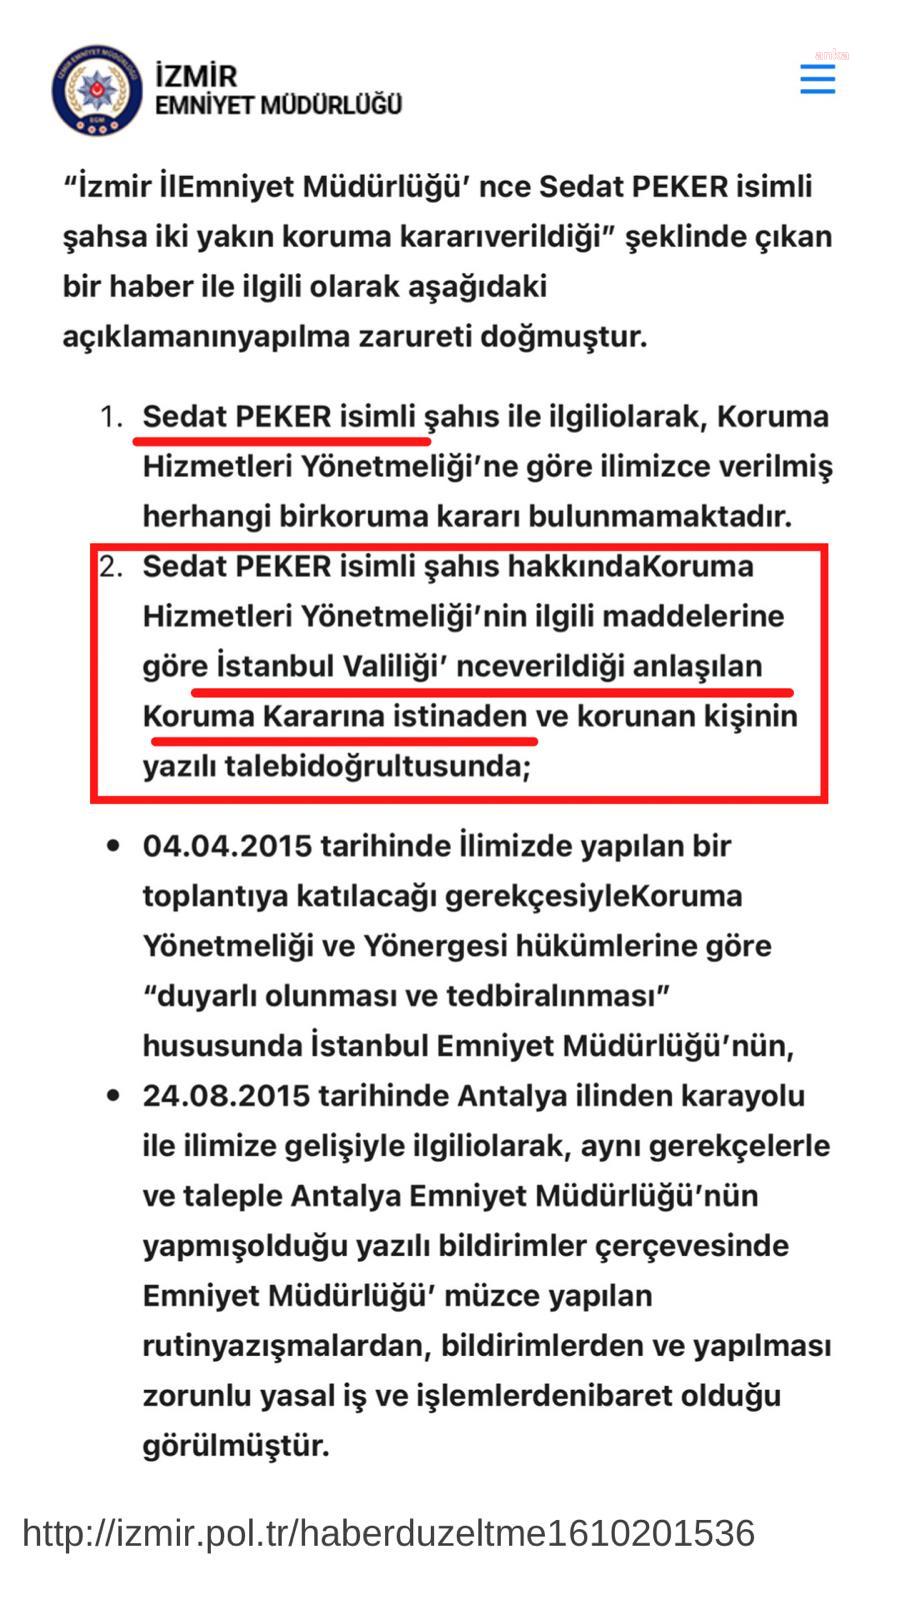 CHP'li Başarır, Sedat Peker'e koruma verilmesinin belgesini paylaştı